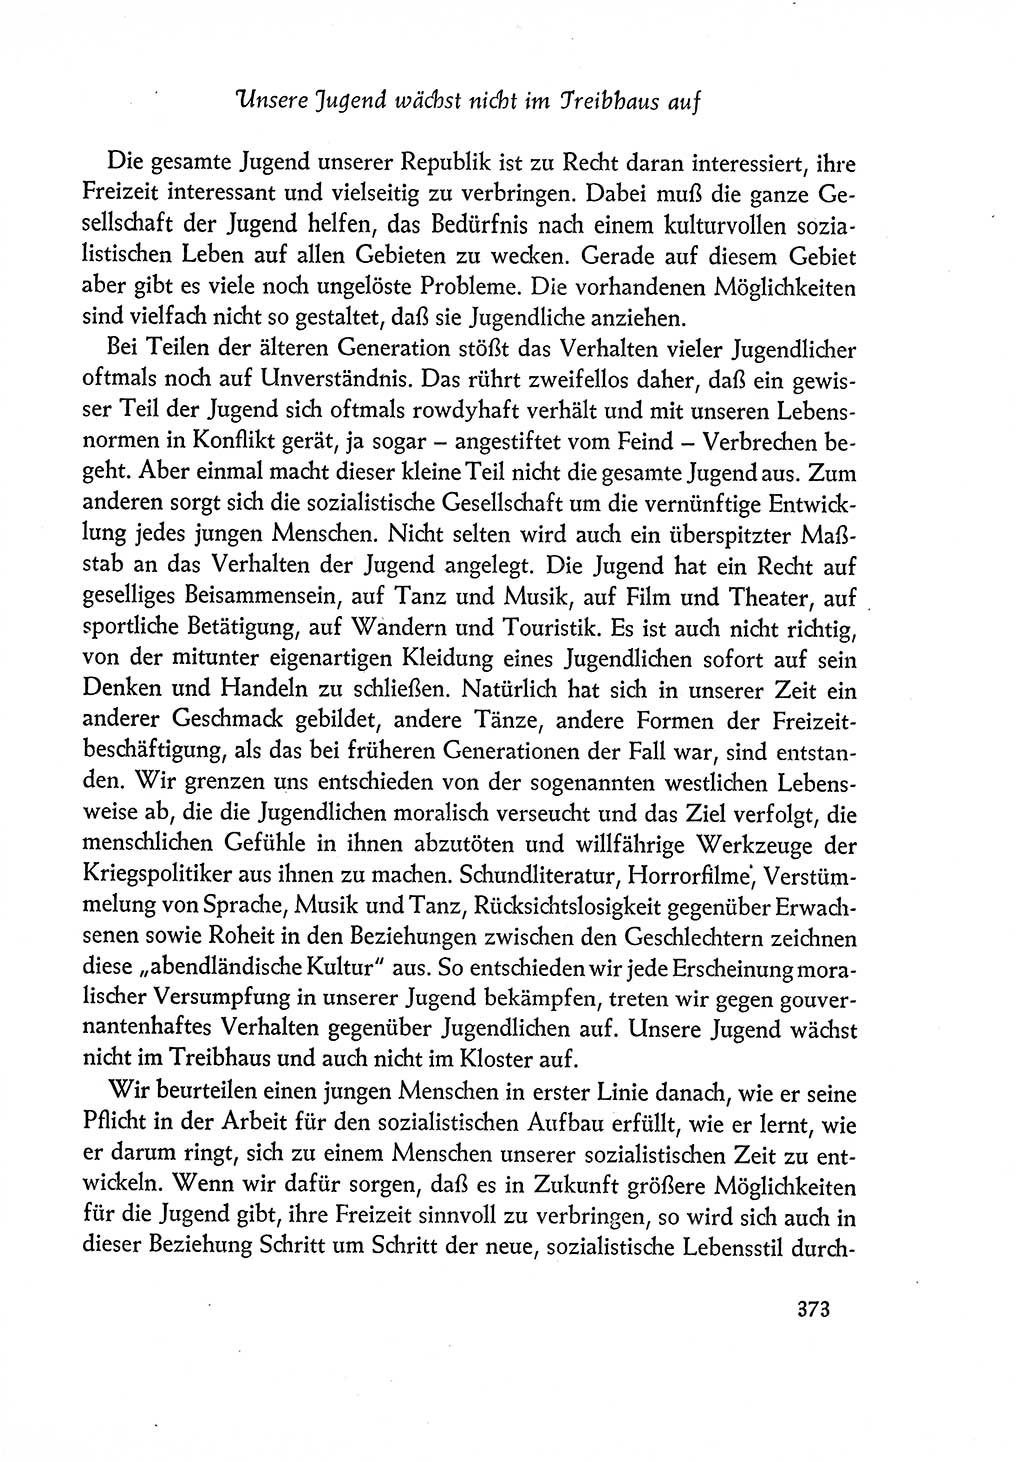 Dokumente der Sozialistischen Einheitspartei Deutschlands (SED) [Deutsche Demokratische Republik (DDR)] 1960-1961, Seite 373 (Dok. SED DDR 1960-1961, S. 373)